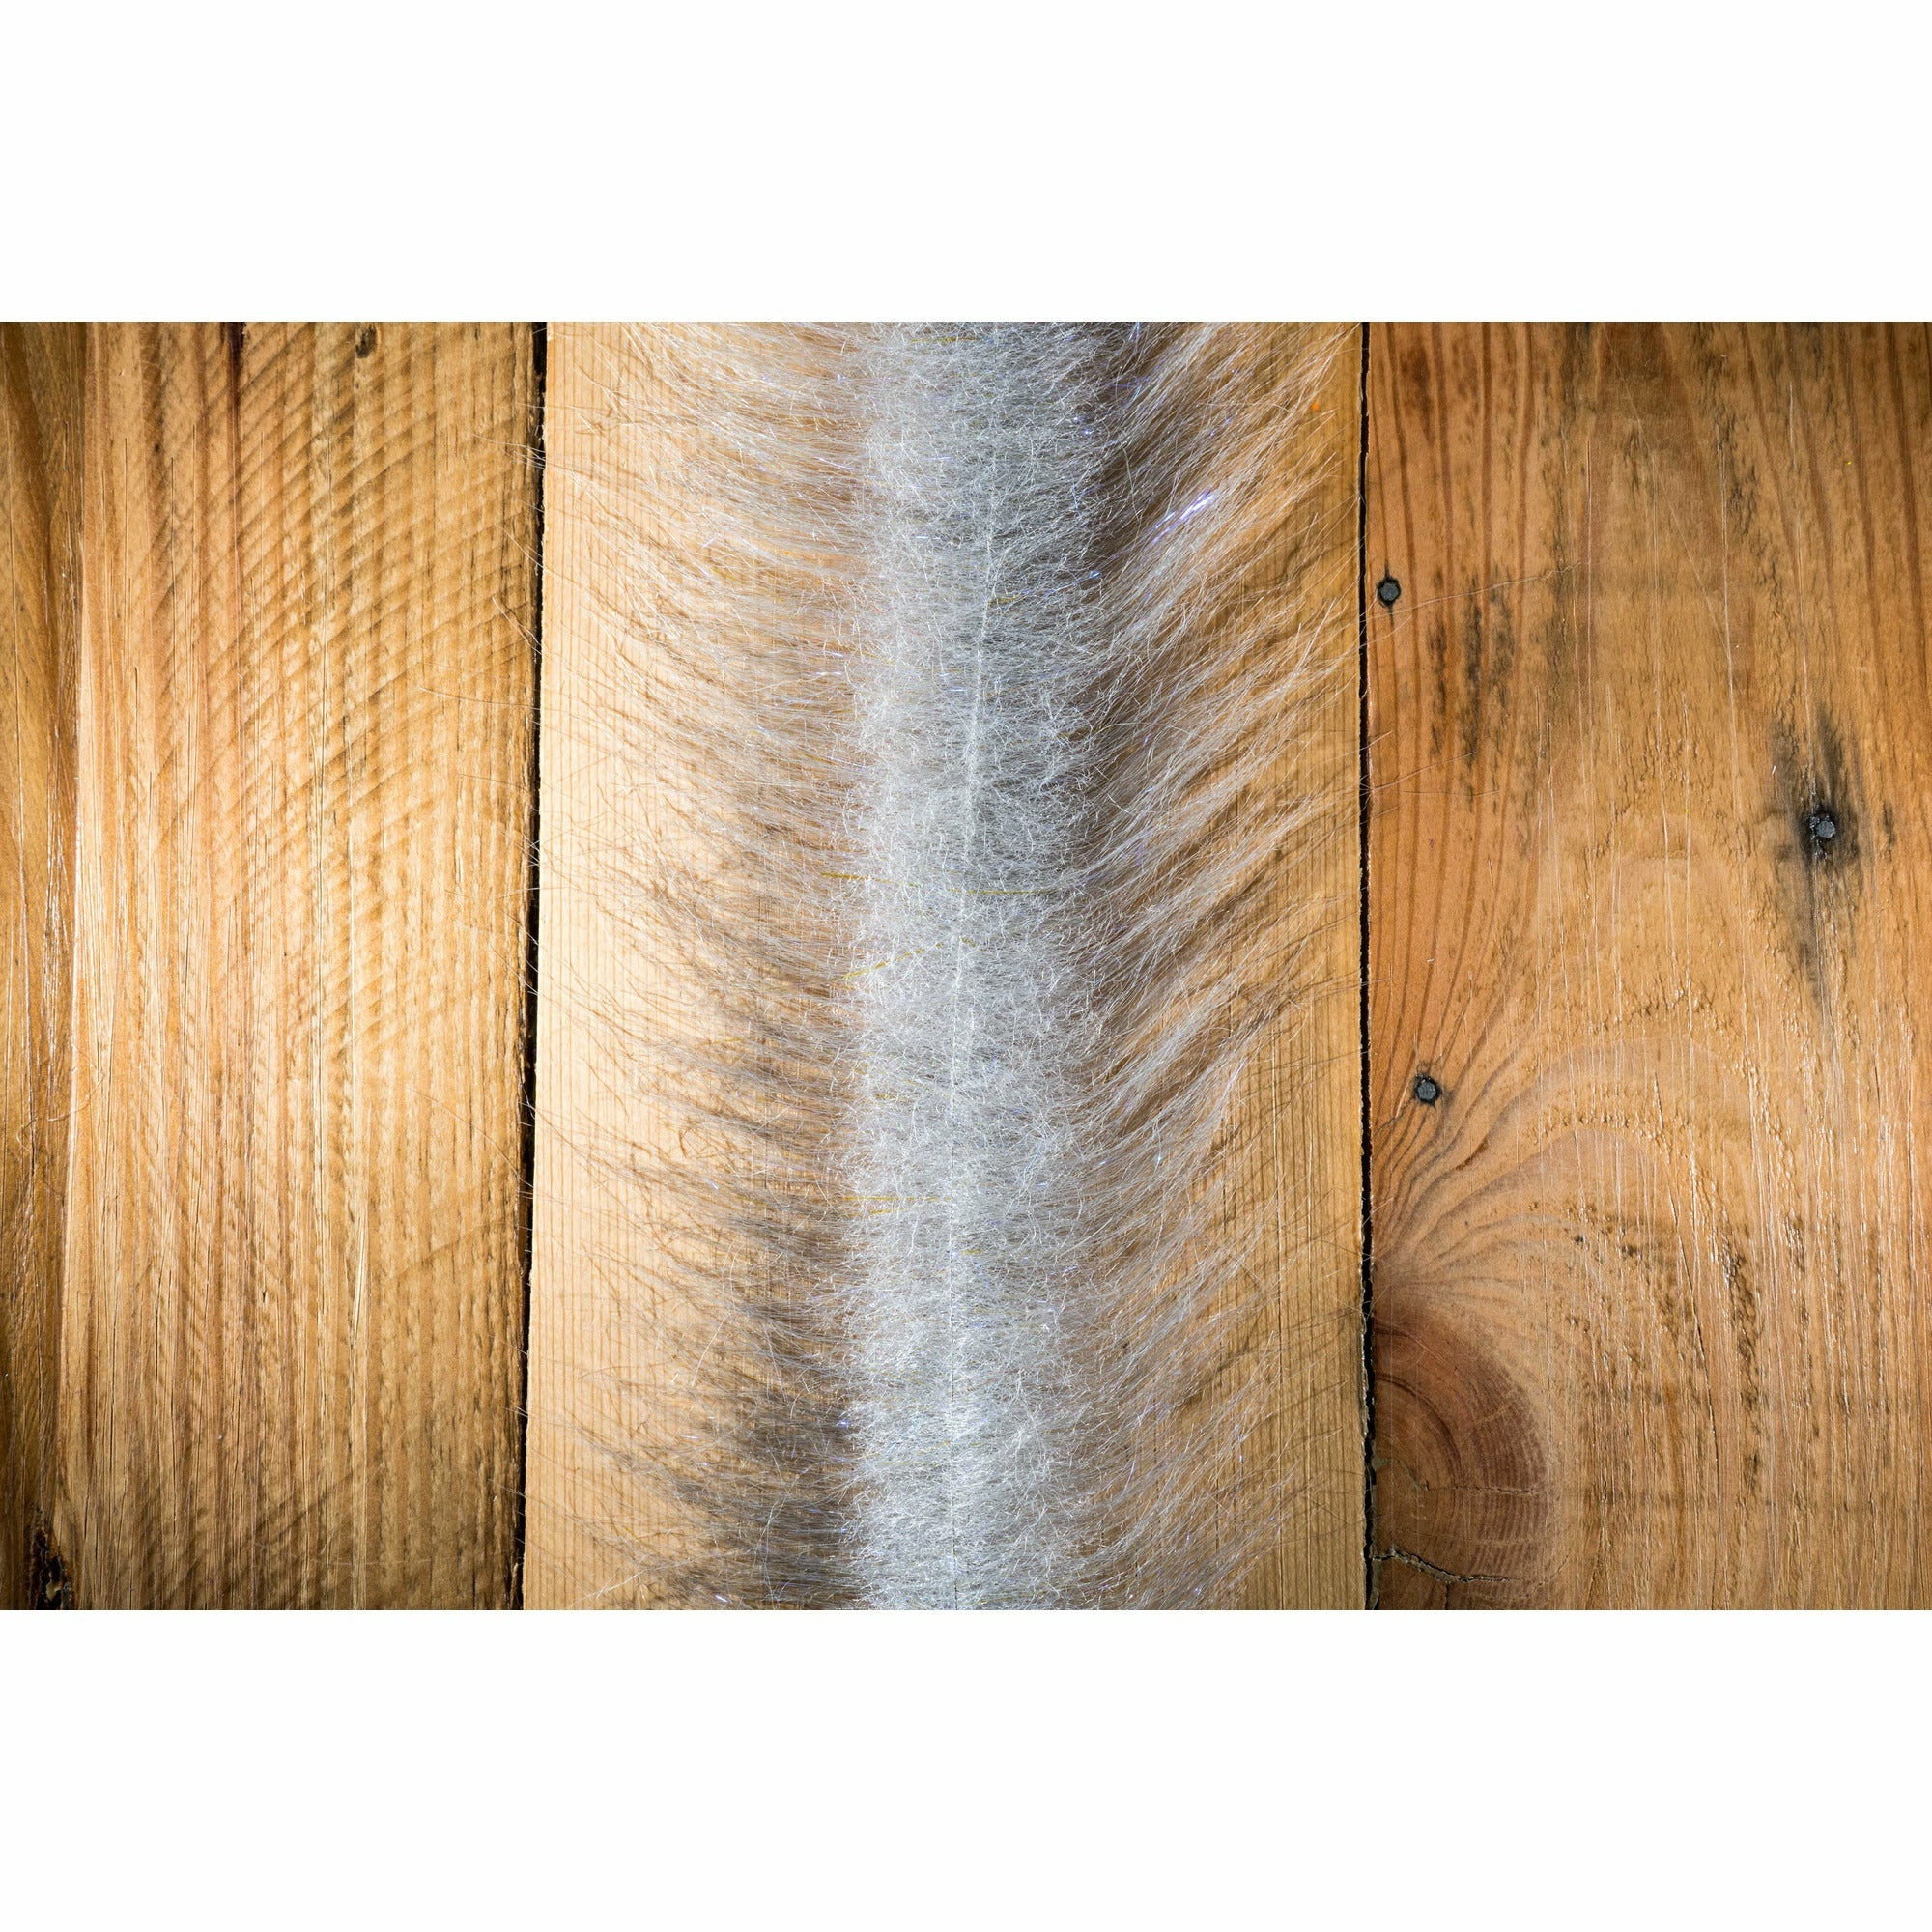 EP Craft Fur Brush 3" - Grey & White